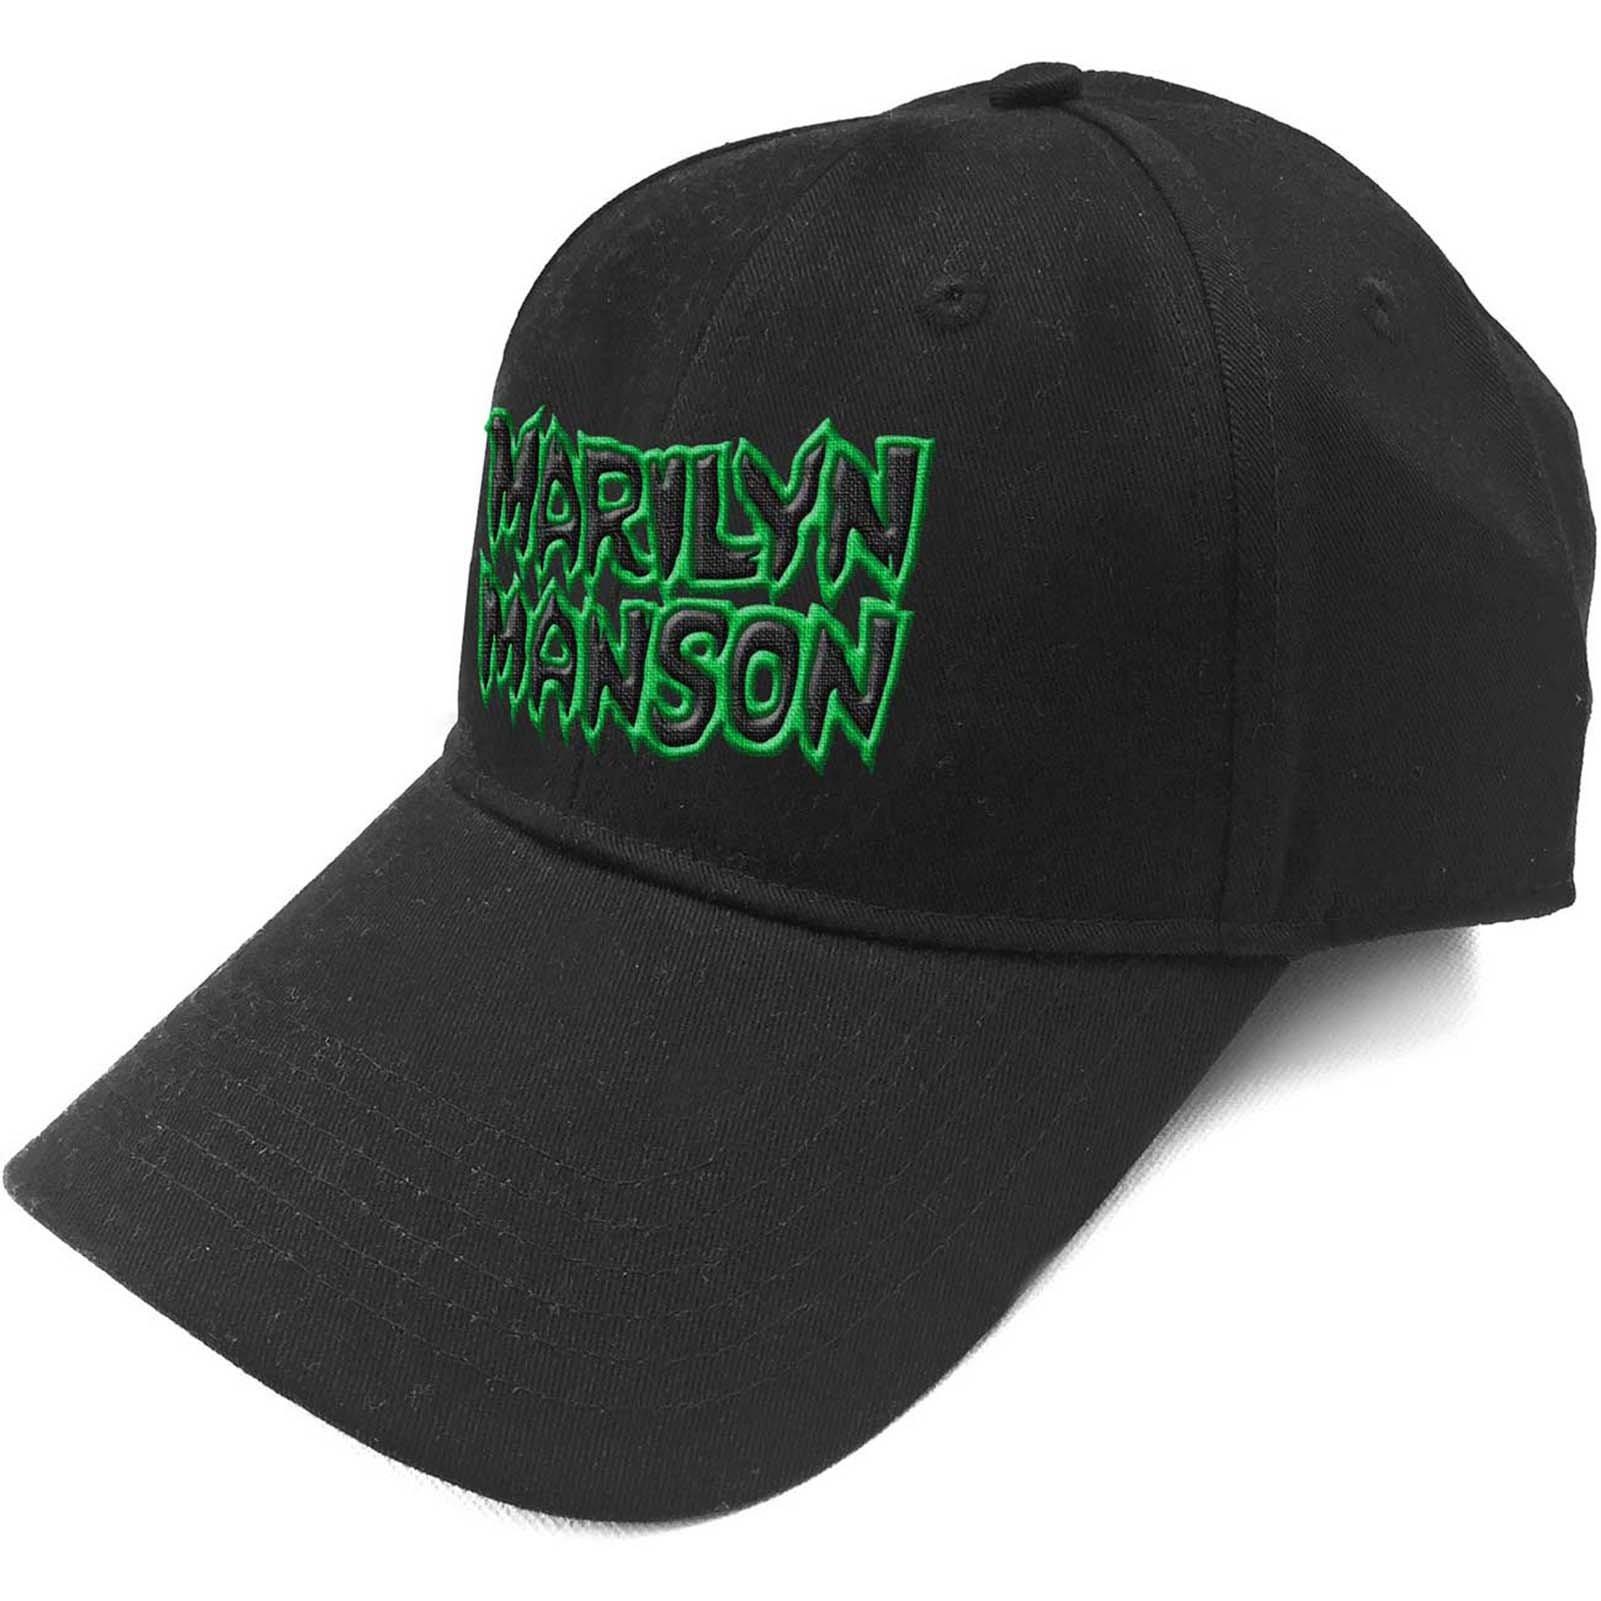 цена Бейсбольная кепка с текстовым логотипом и ремешком на спине Marilyn Manson, черный